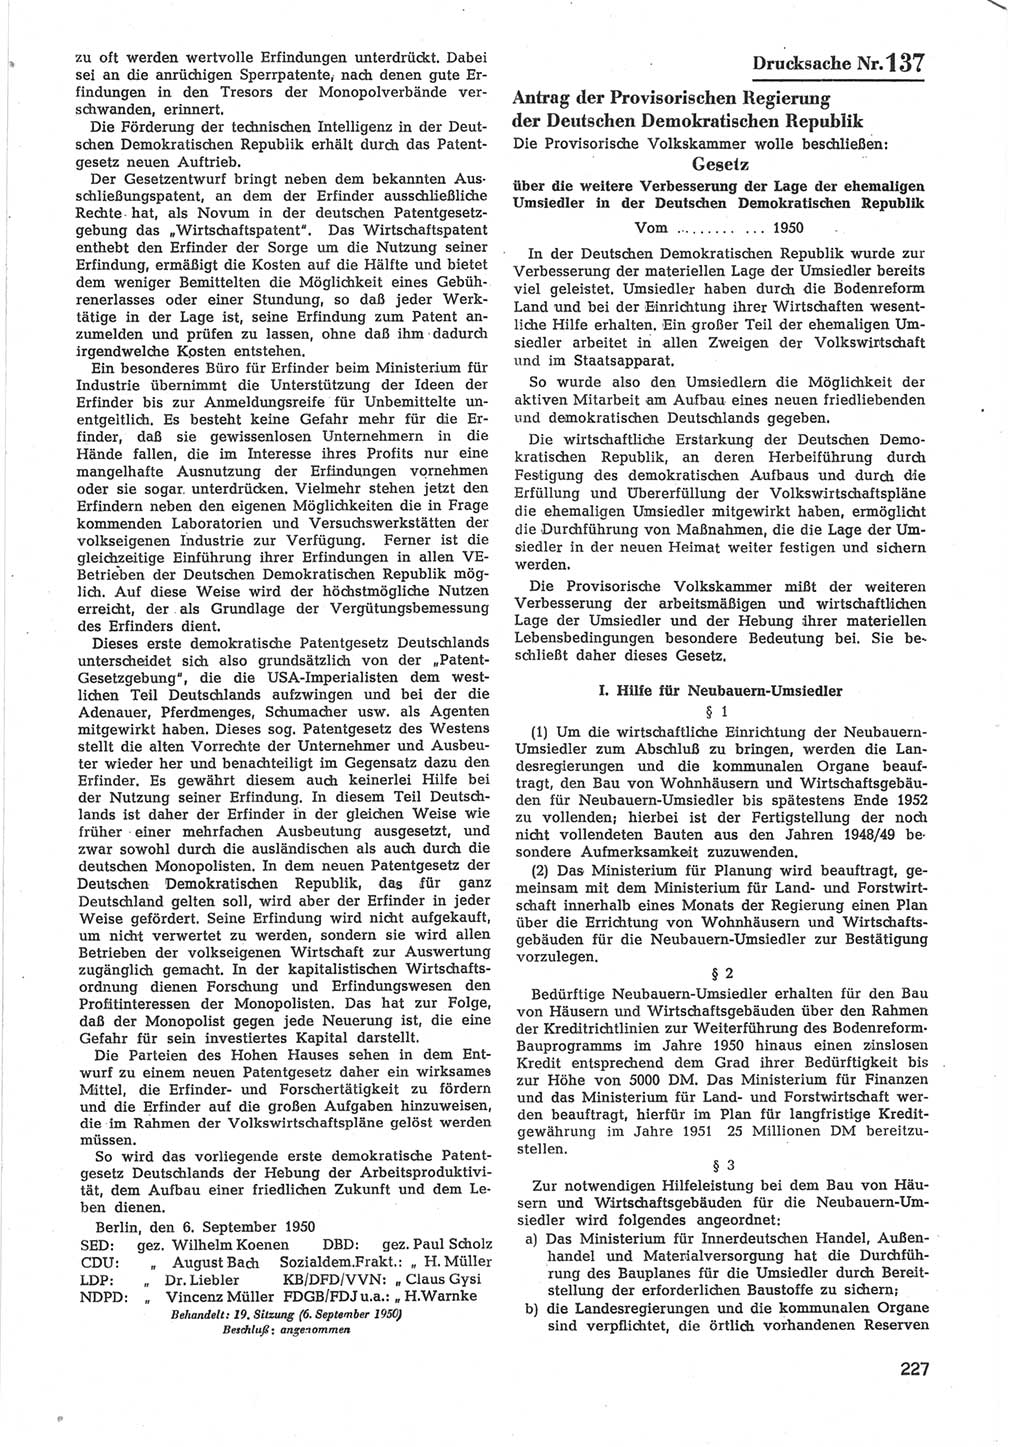 Provisorische Volkskammer (VK) der Deutschen Demokratischen Republik (DDR) 1949-1950, Dokument 829 (Prov. VK DDR 1949-1950, Dok. 829)